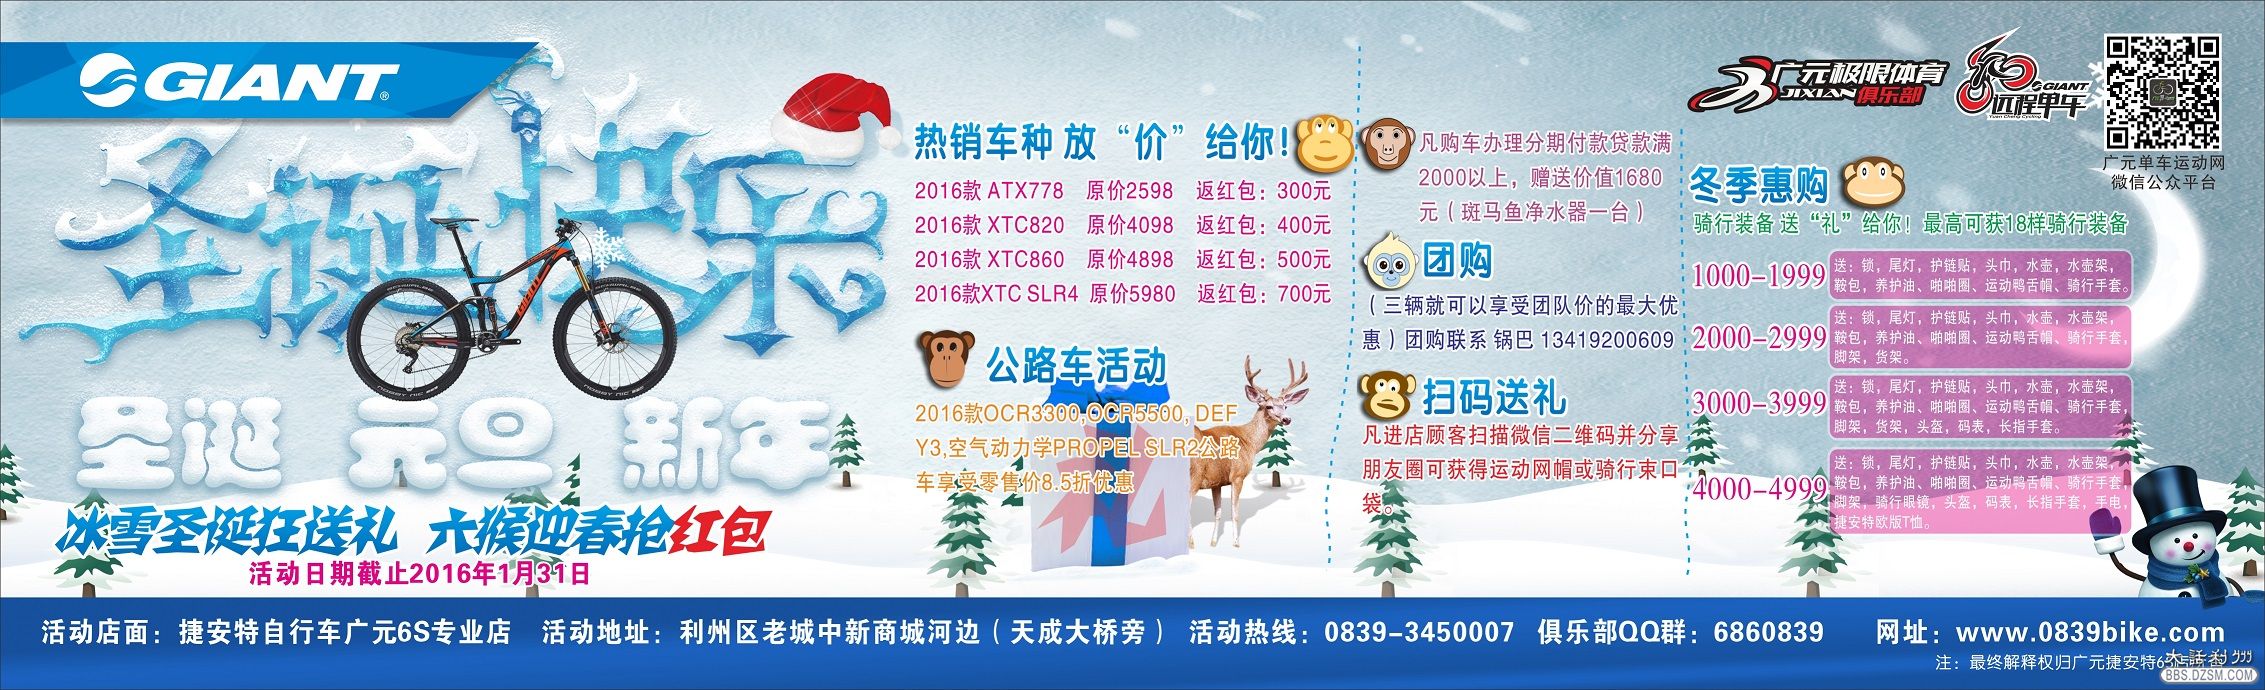 2015圣诞元旦活动海报1.jpg